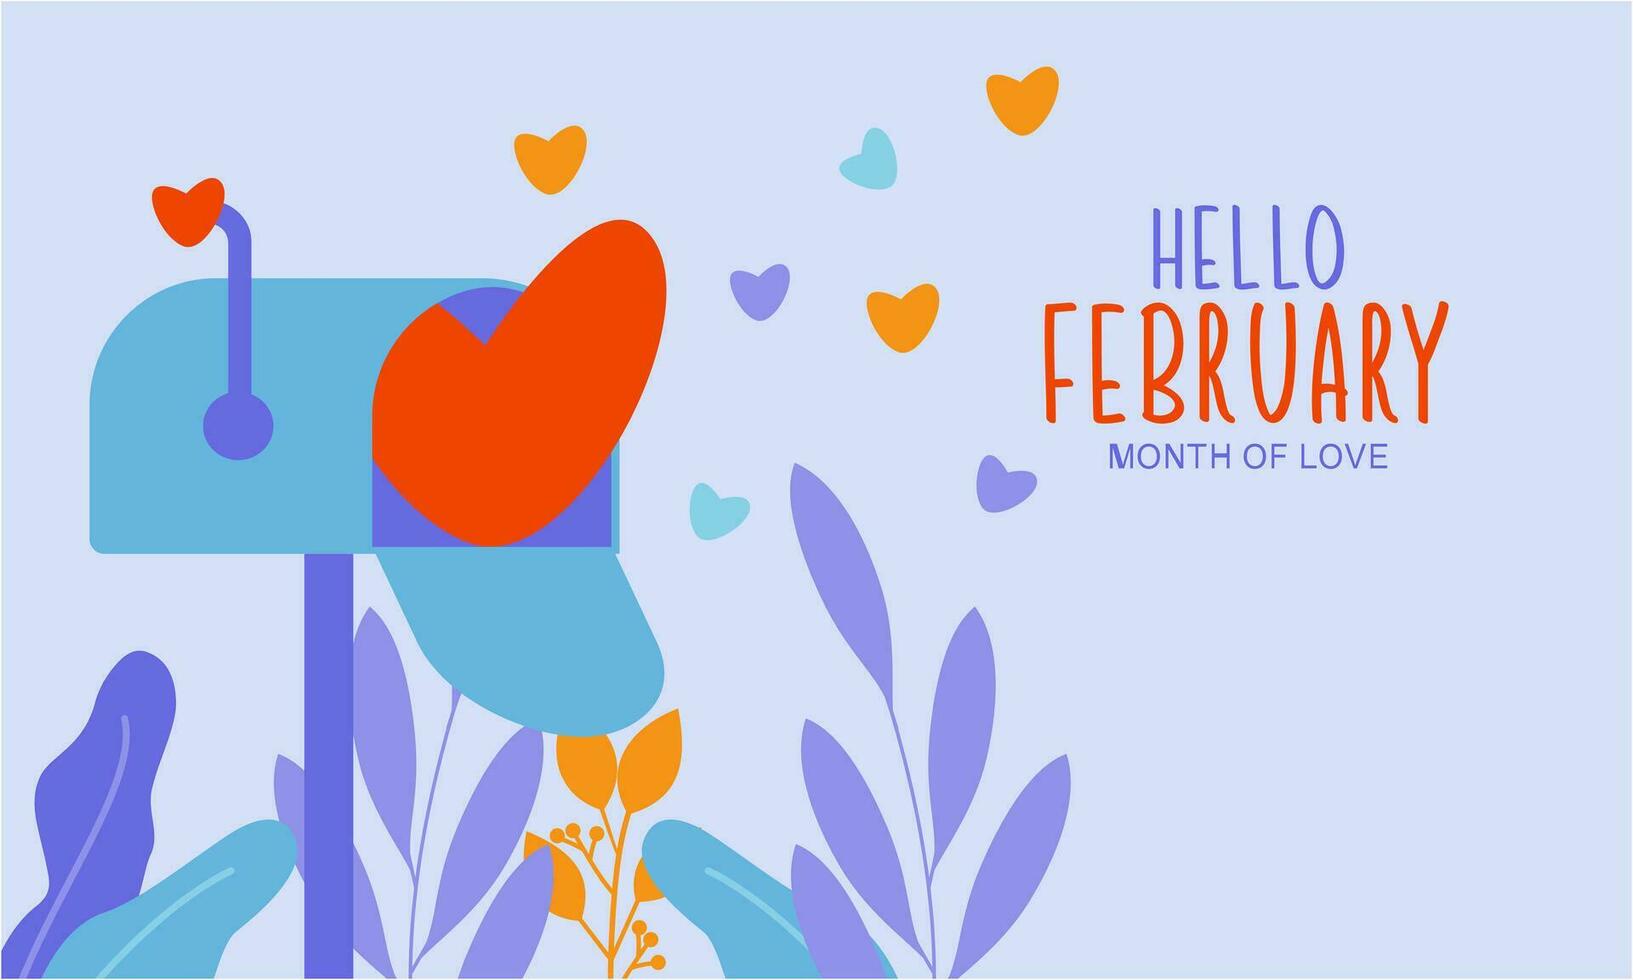 febbraio mese di amore sfondo vettore